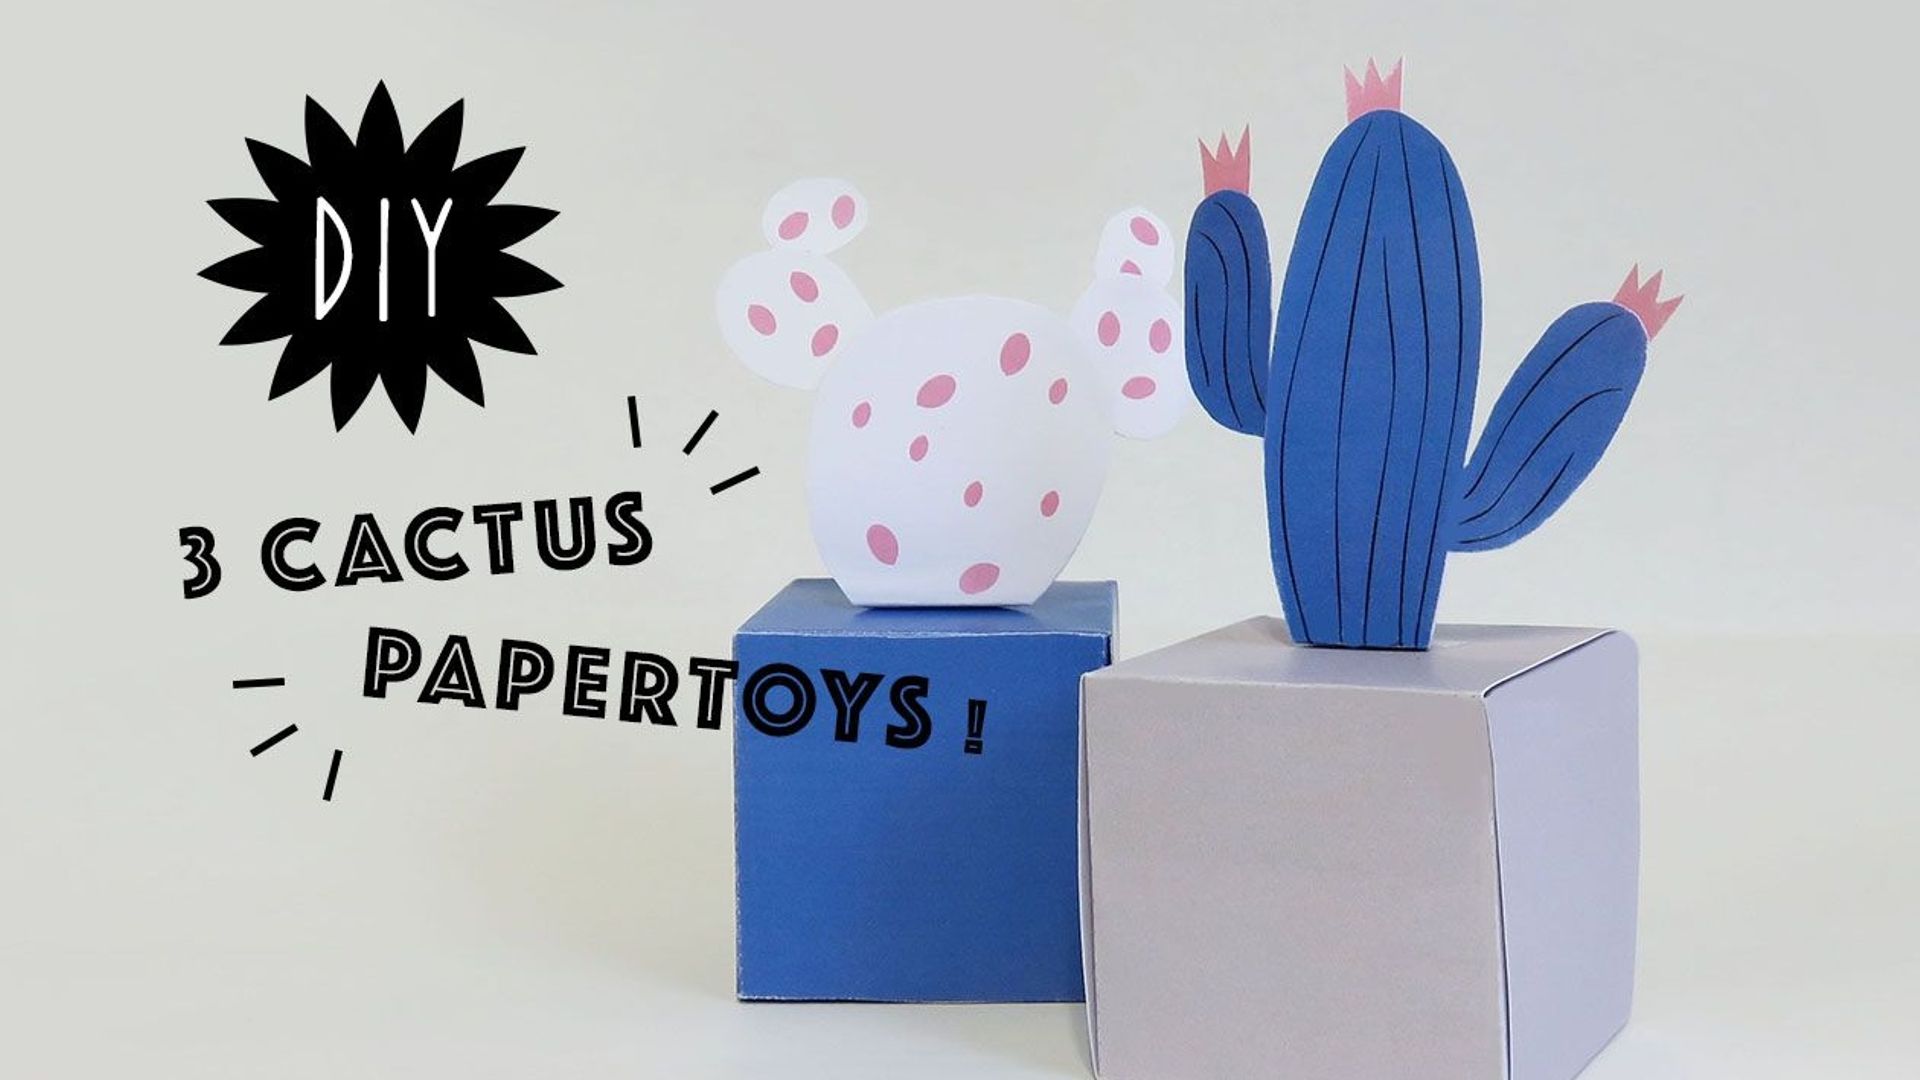 Le papertoy de la semaine : Marcus, le cactus 